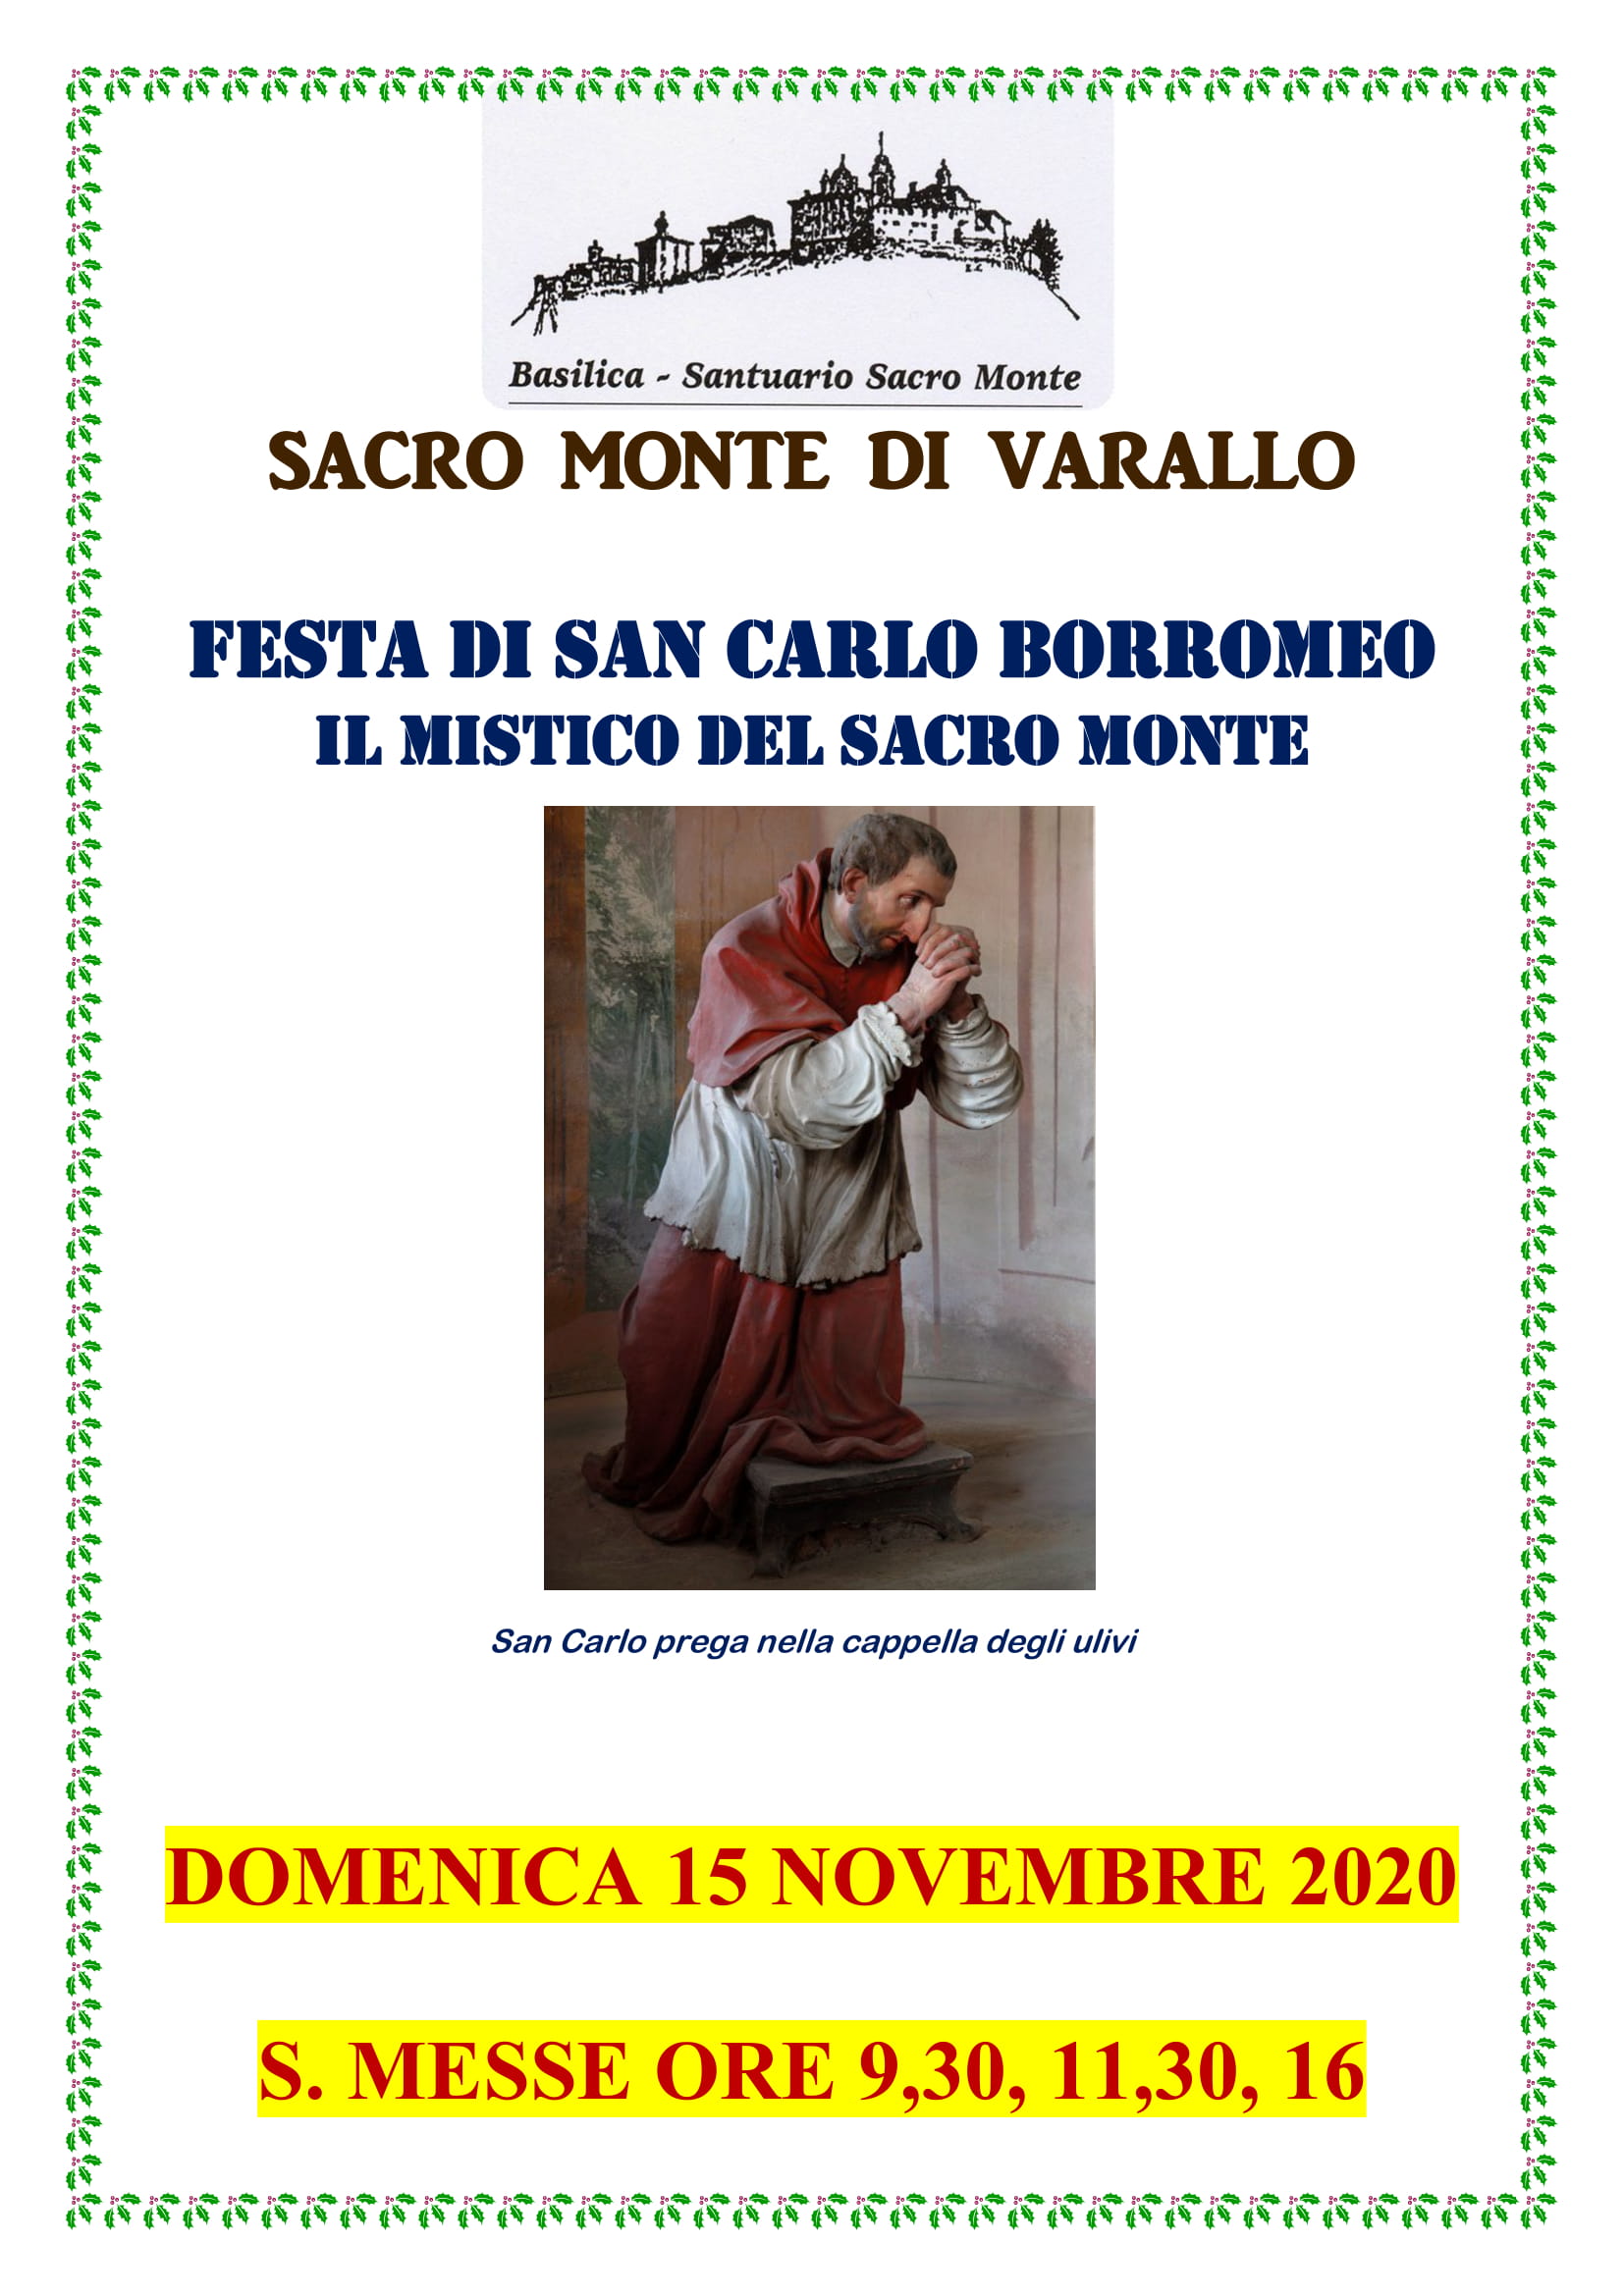 Festa di San Carlo Borromeo 2020 (Mistico del Sacro Monte)